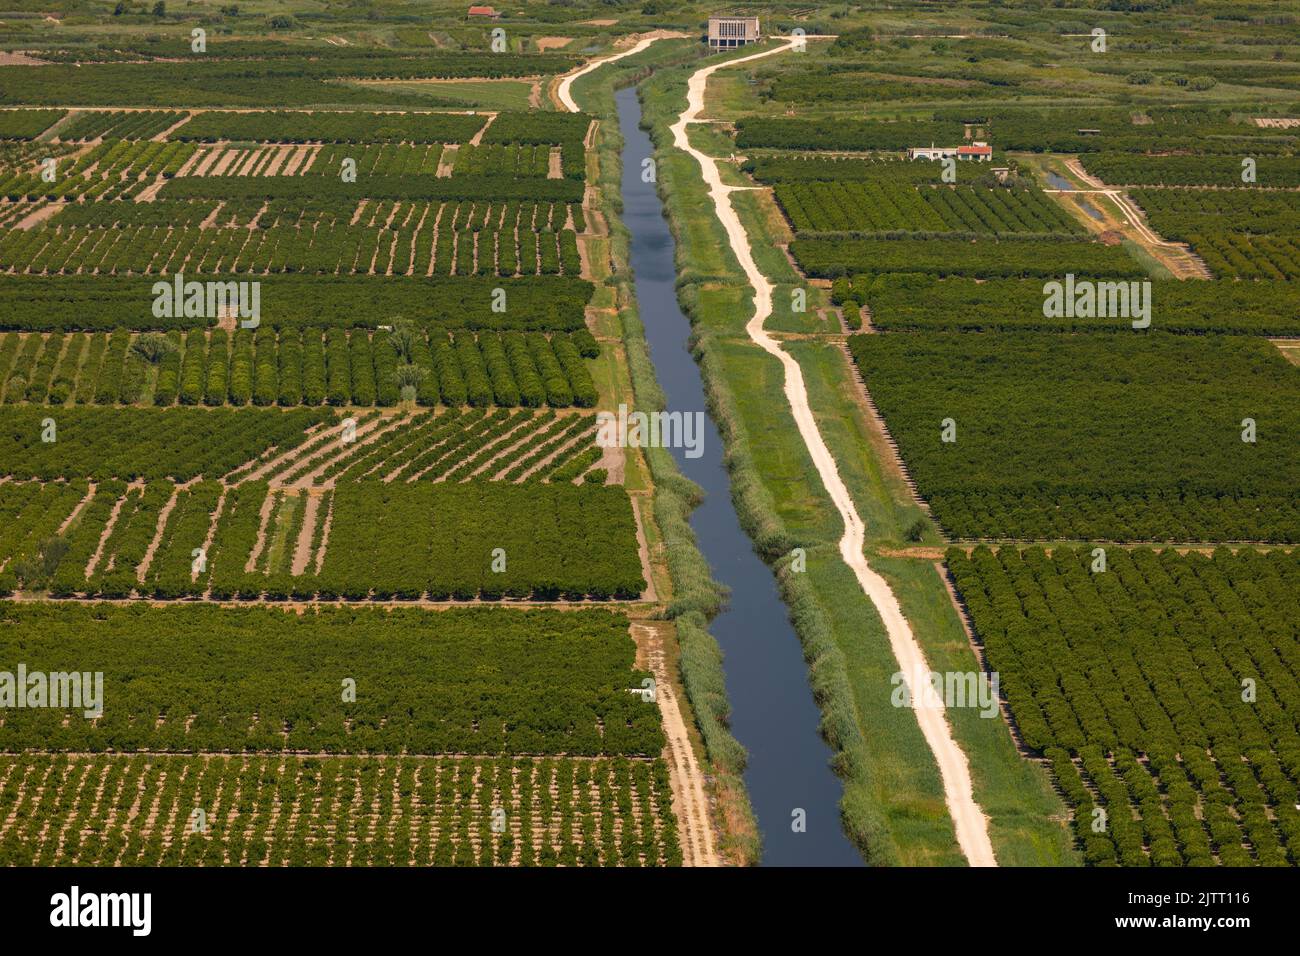 OPUZEN, VALLE DI NERETVA, CROAZIA, EUROPA - Agricoltura e canali di irrigazione nella Valle del fiume Neretva. Foto Stock